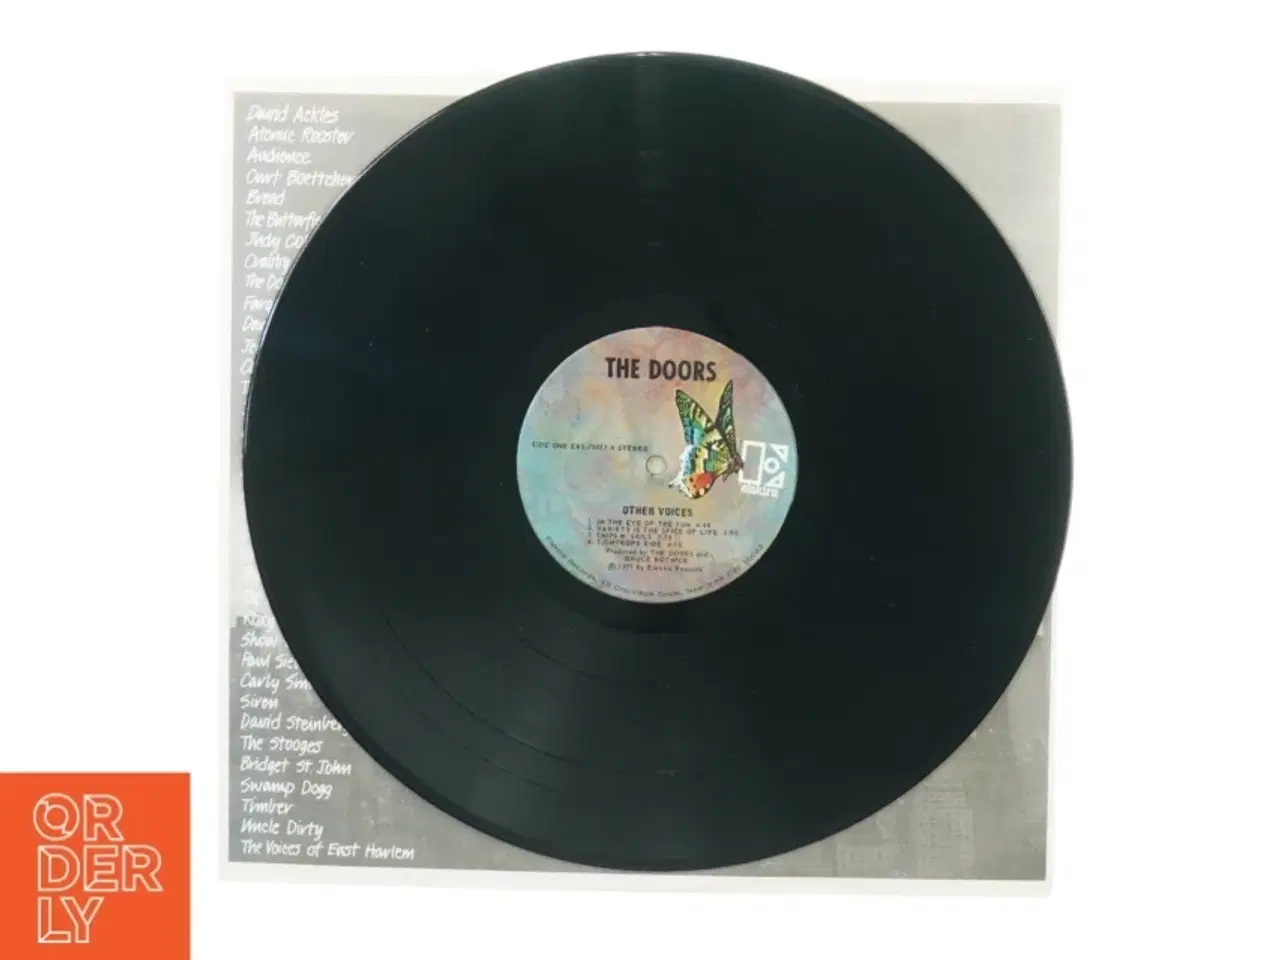 Billede 3 - The Doors - Other voices (LP) fra Elektra (str. 30 cm)